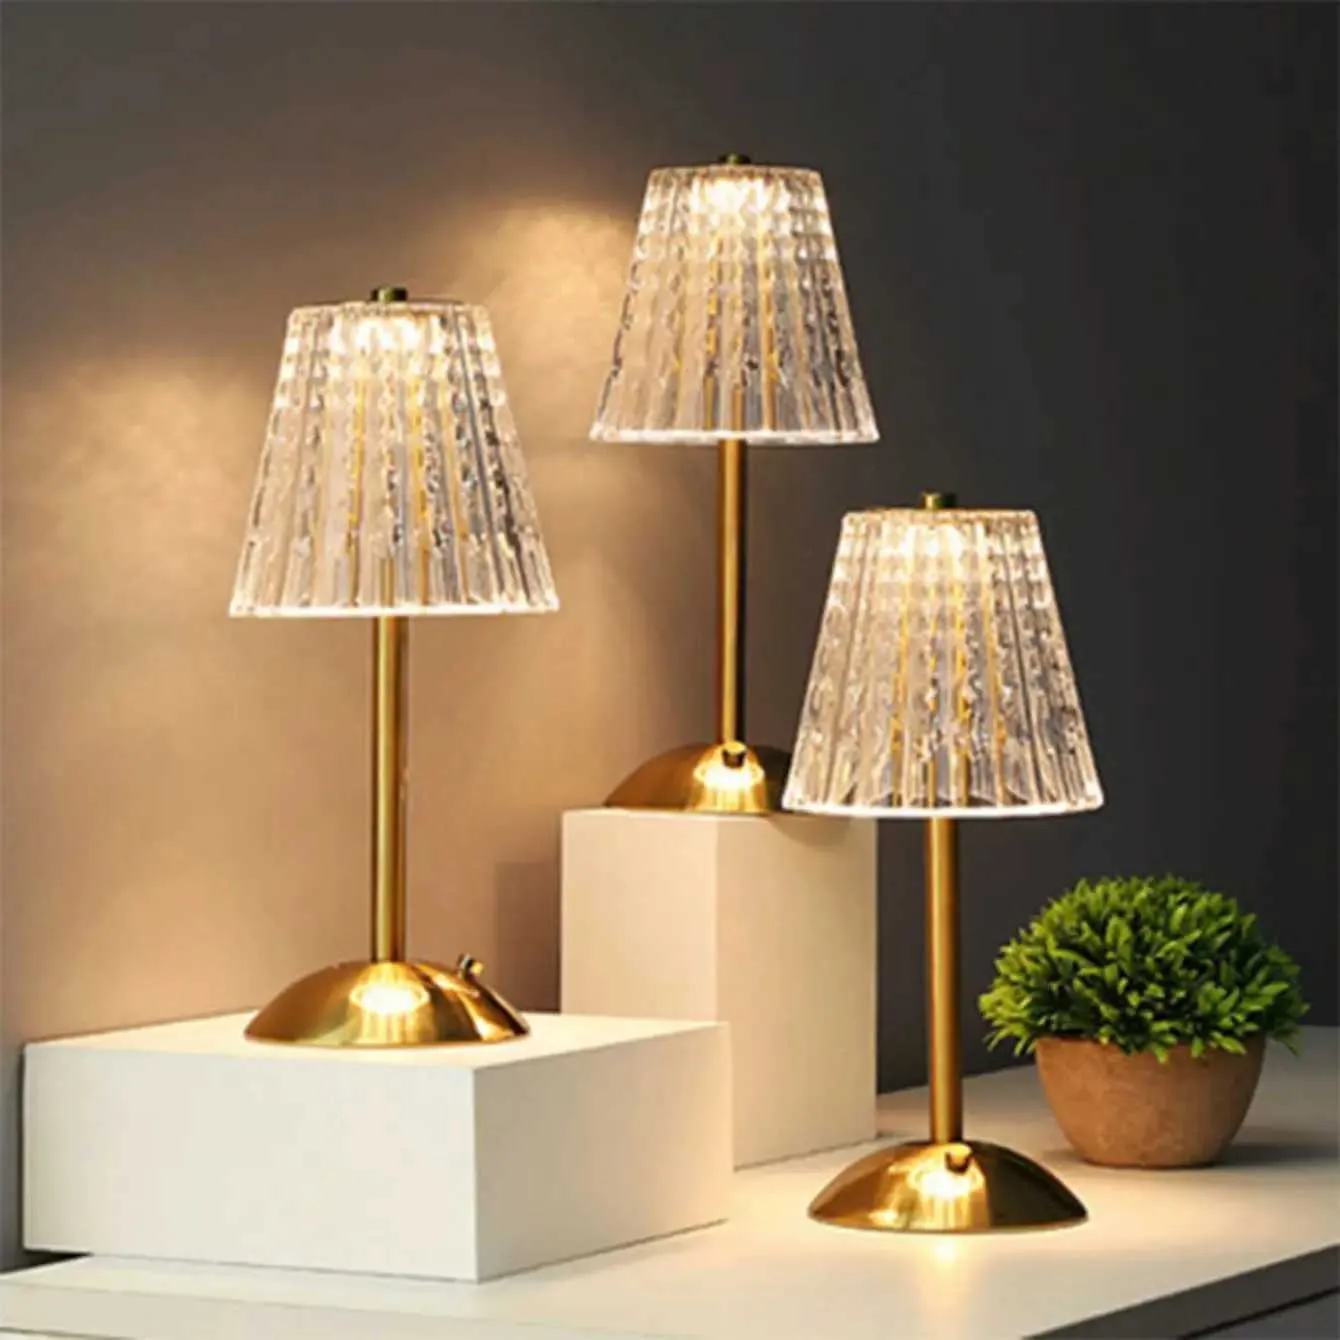 Lampy stołowe kryształowy retro lampa stołowa sypialnia lampka nocna luksusowa lampa atmosfery ładowna ściemnianie światła LED